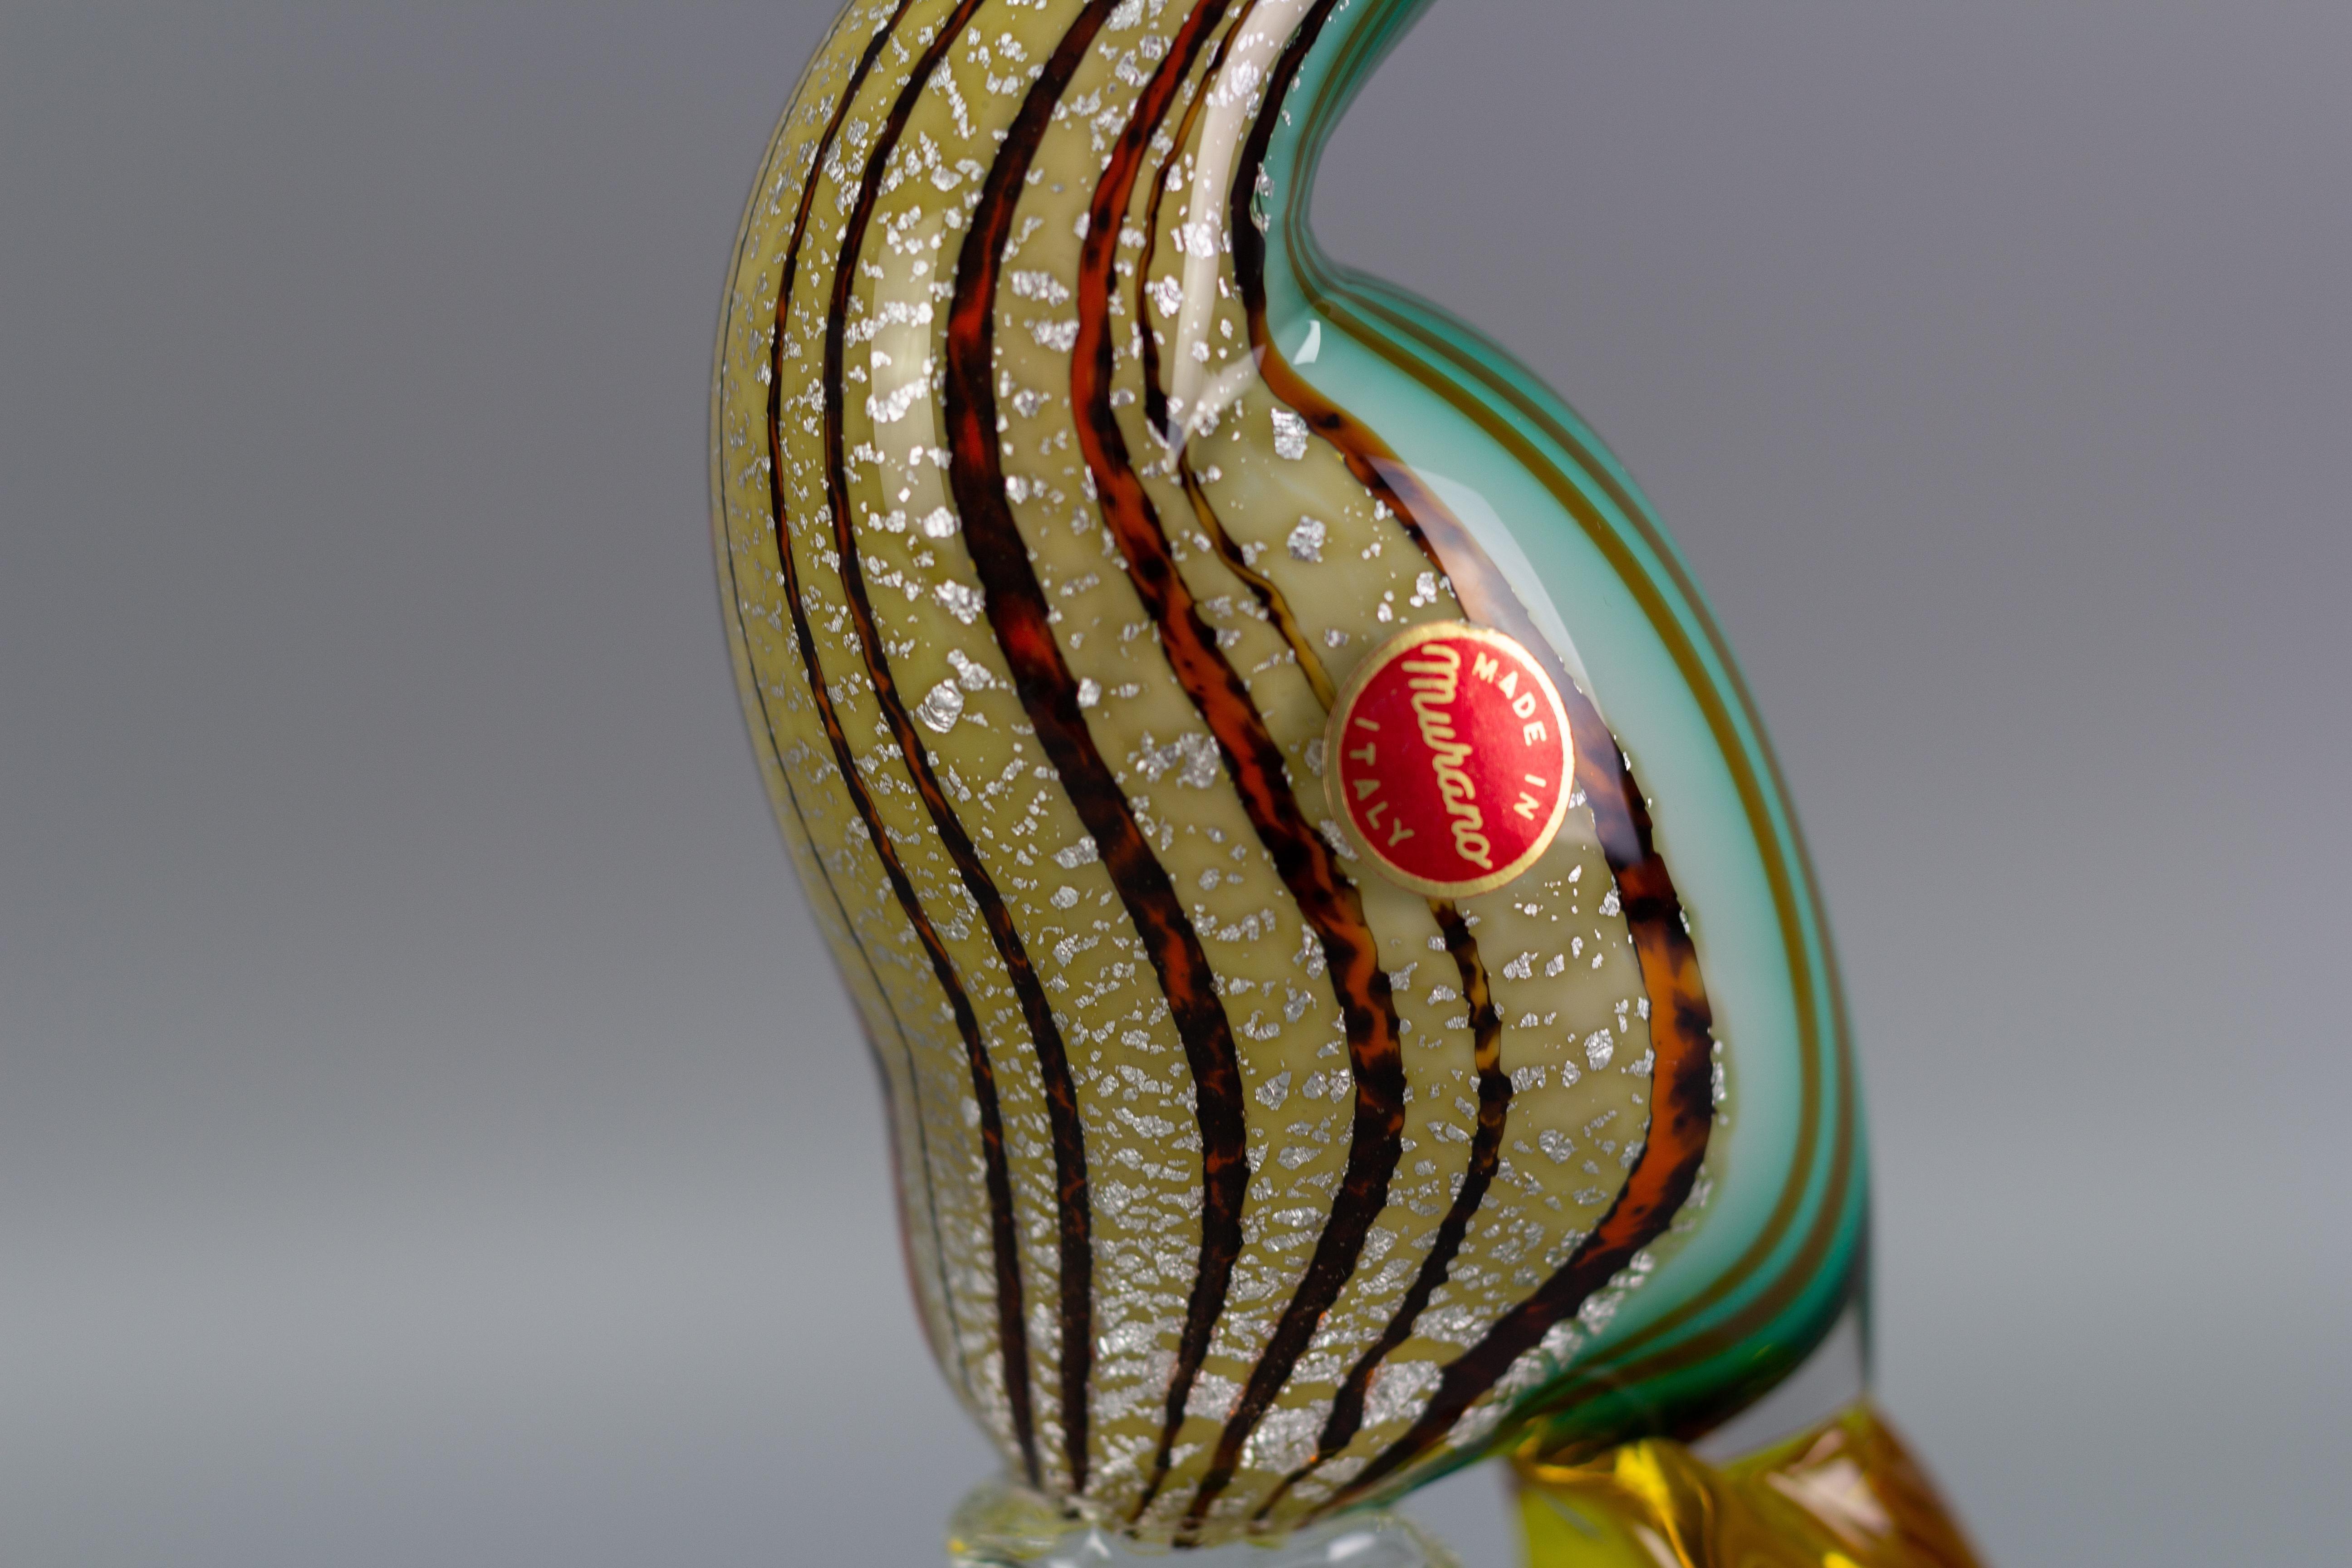 Italian Mid-Century Murano Glass Bird Sculpture 